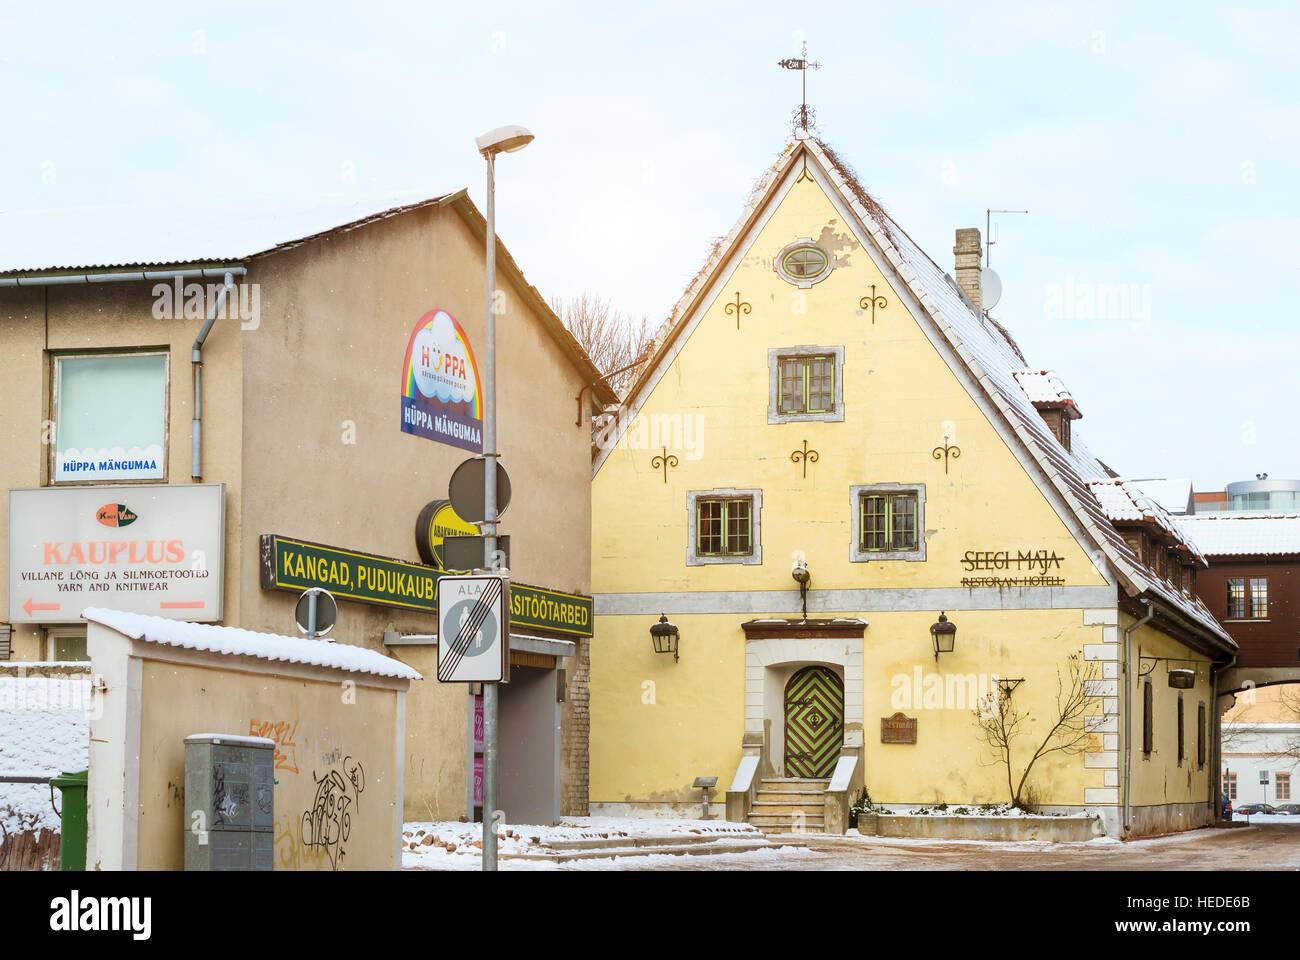 Parnu, Estonia - 10 Gennaio 2016: diversità architettonica nel centro del resort Estone città Parnu. Giallo lapidato vecchio hotel Seeg Foto Stock